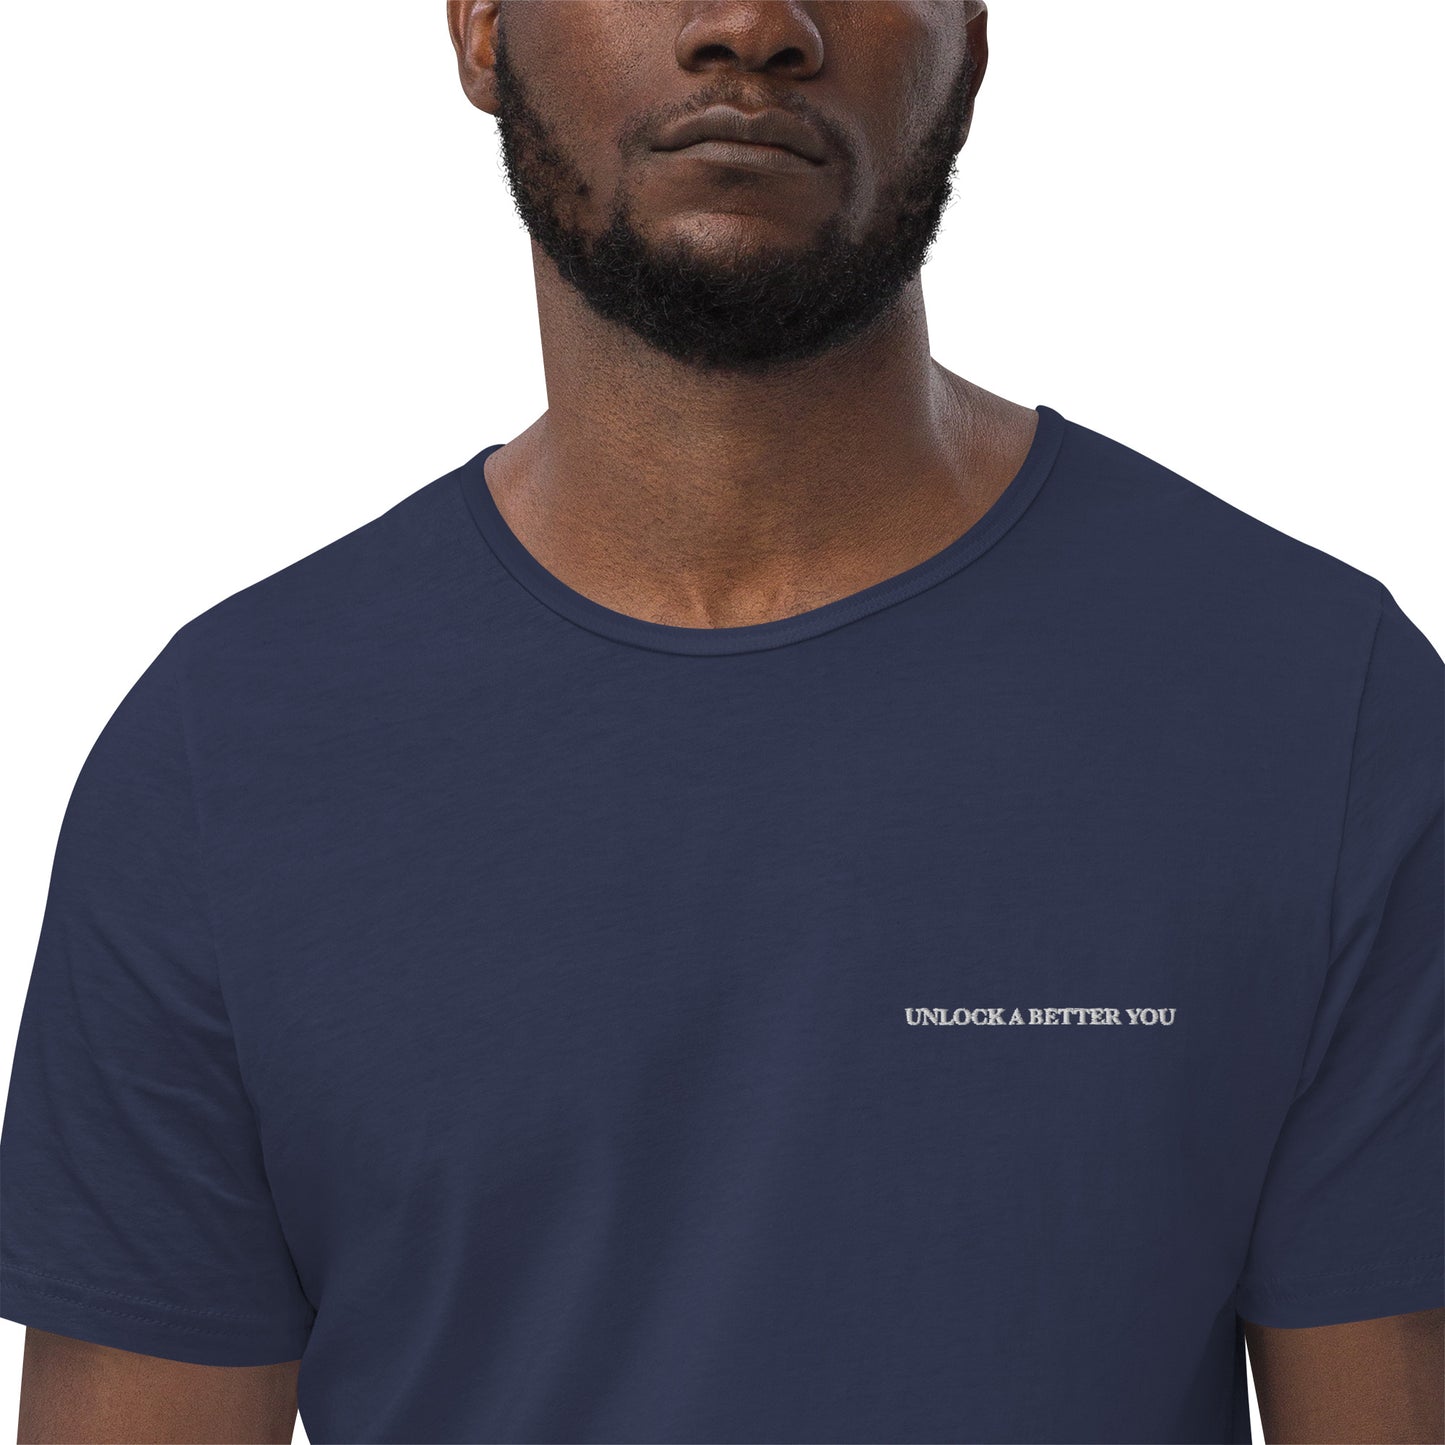 
                  
                    Unlock a better you "Men's Curved Hem T-Shirt" - Ocean Botanicals
                  
                